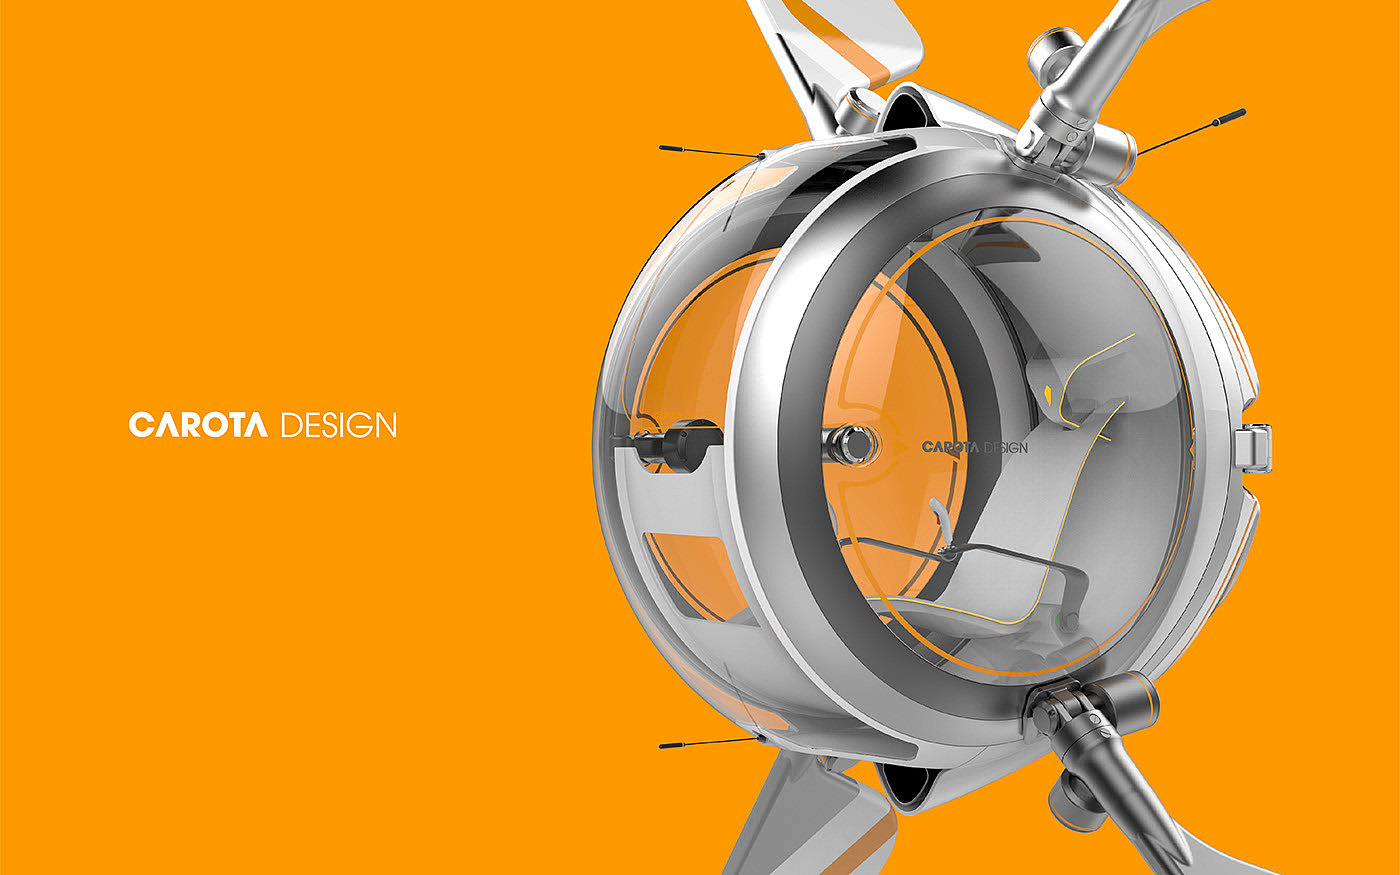 spaceX，Spaceship，automotivedesign，productdesign，fisheye，industrialdeisgn，